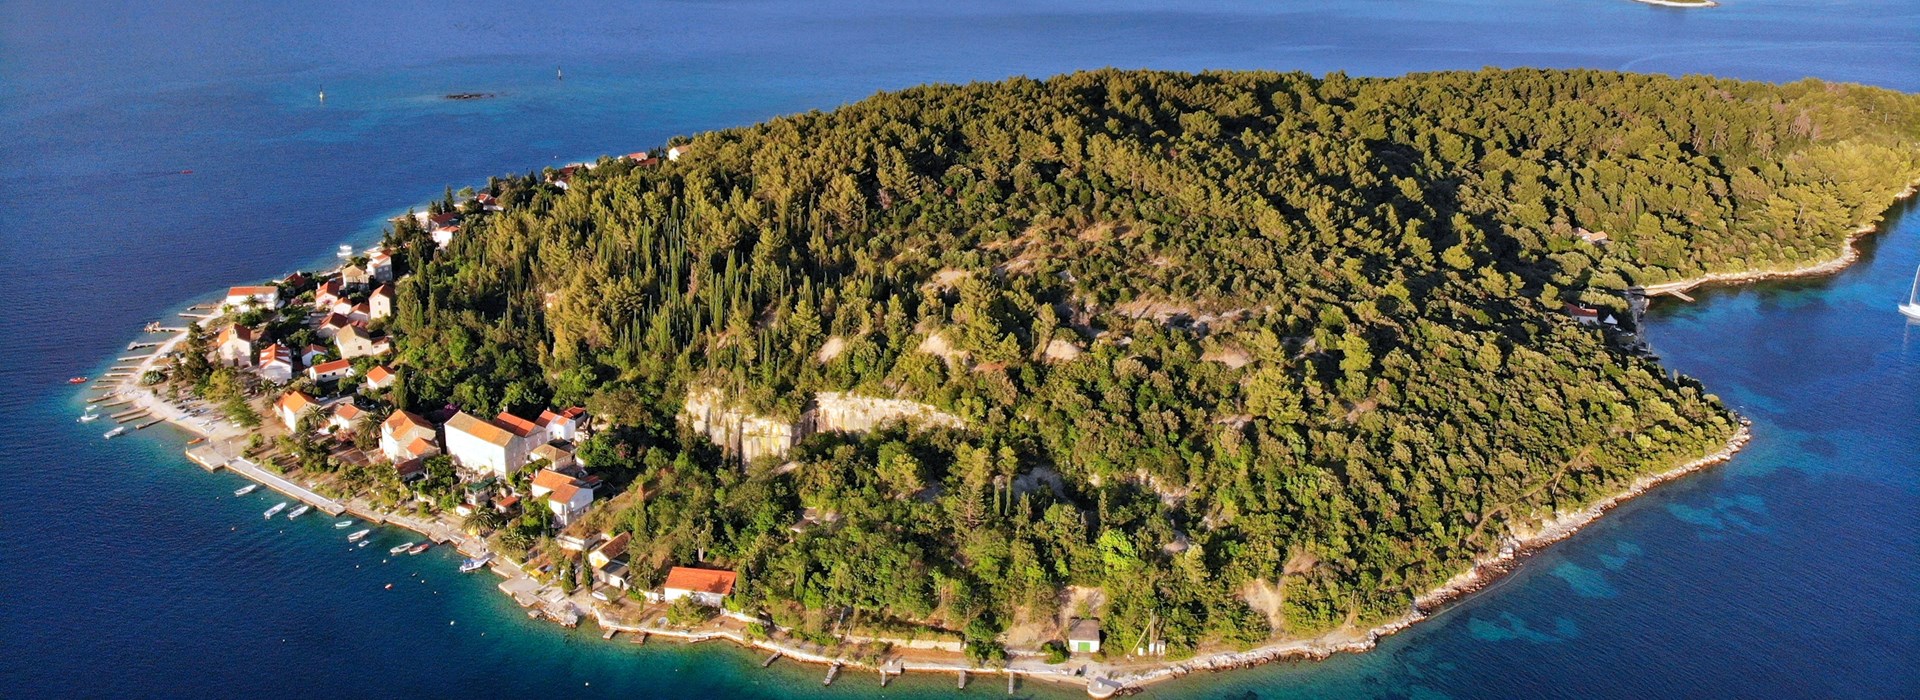 Visiter Les îles de Vrnik et Badja - Croatie